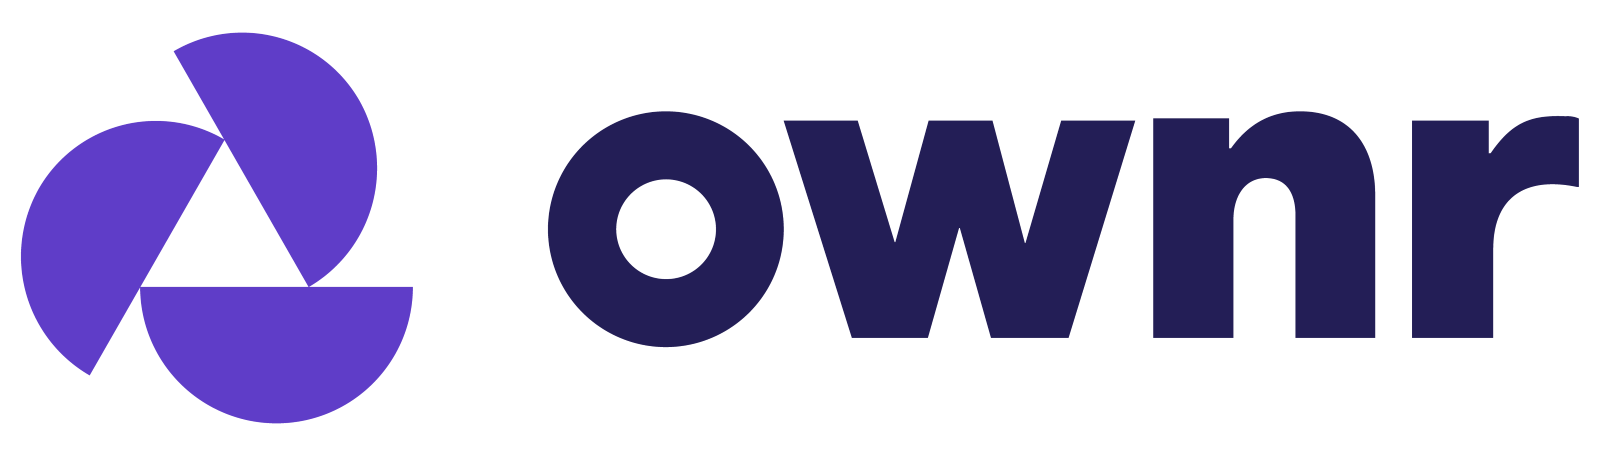 Ownr logo"